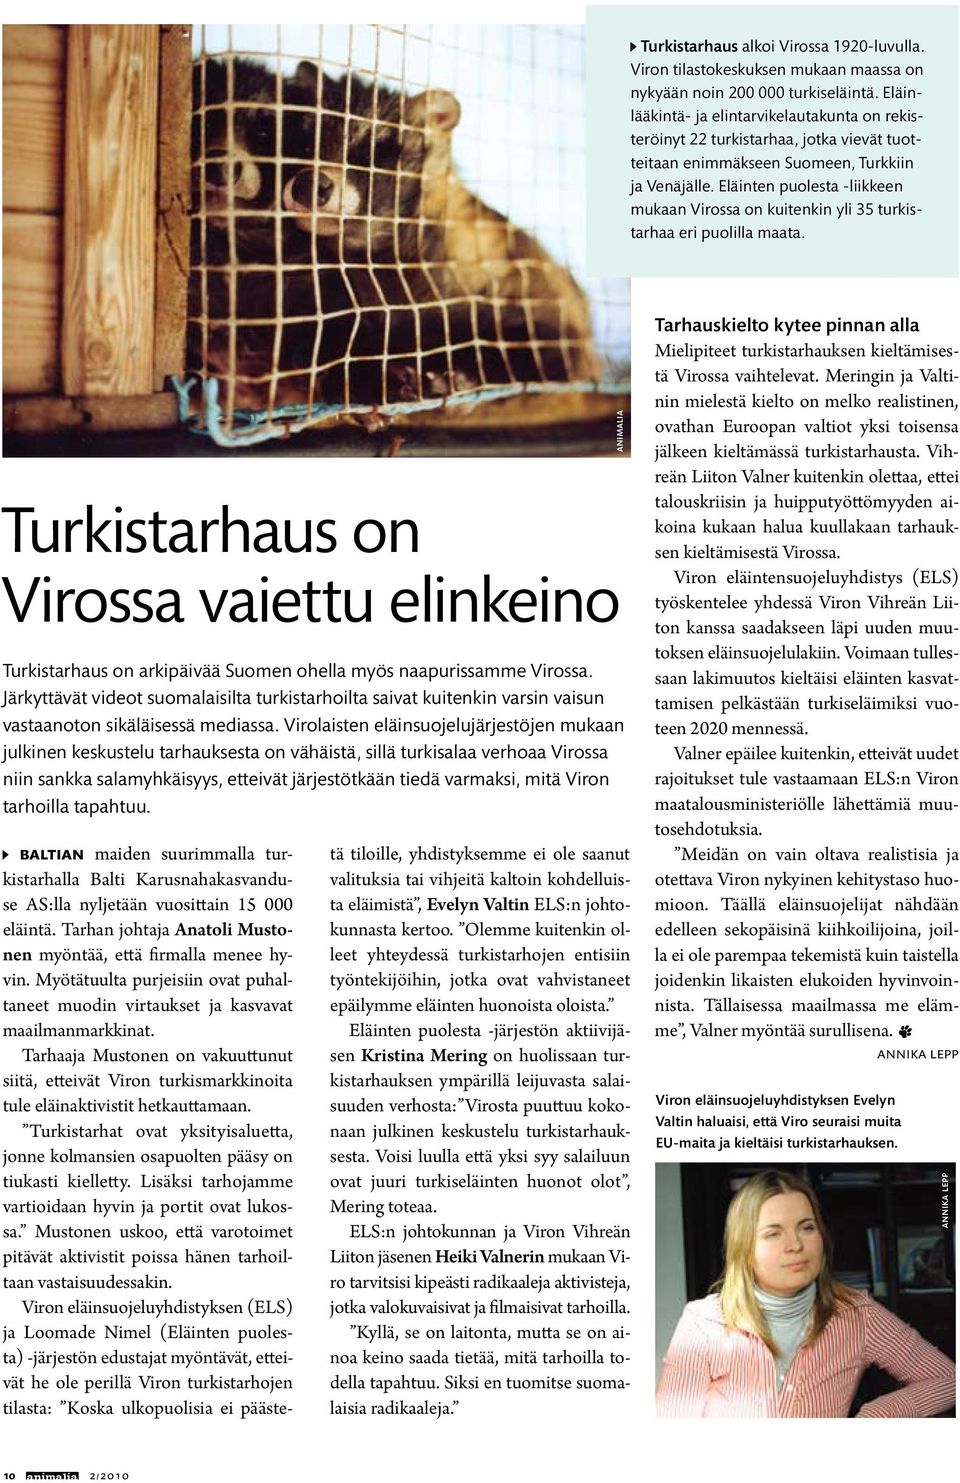 Eläinten puolesta -liikkeen mukaan Virossa on kuitenkin yli 35 turkistarhaa eri puolilla maata.